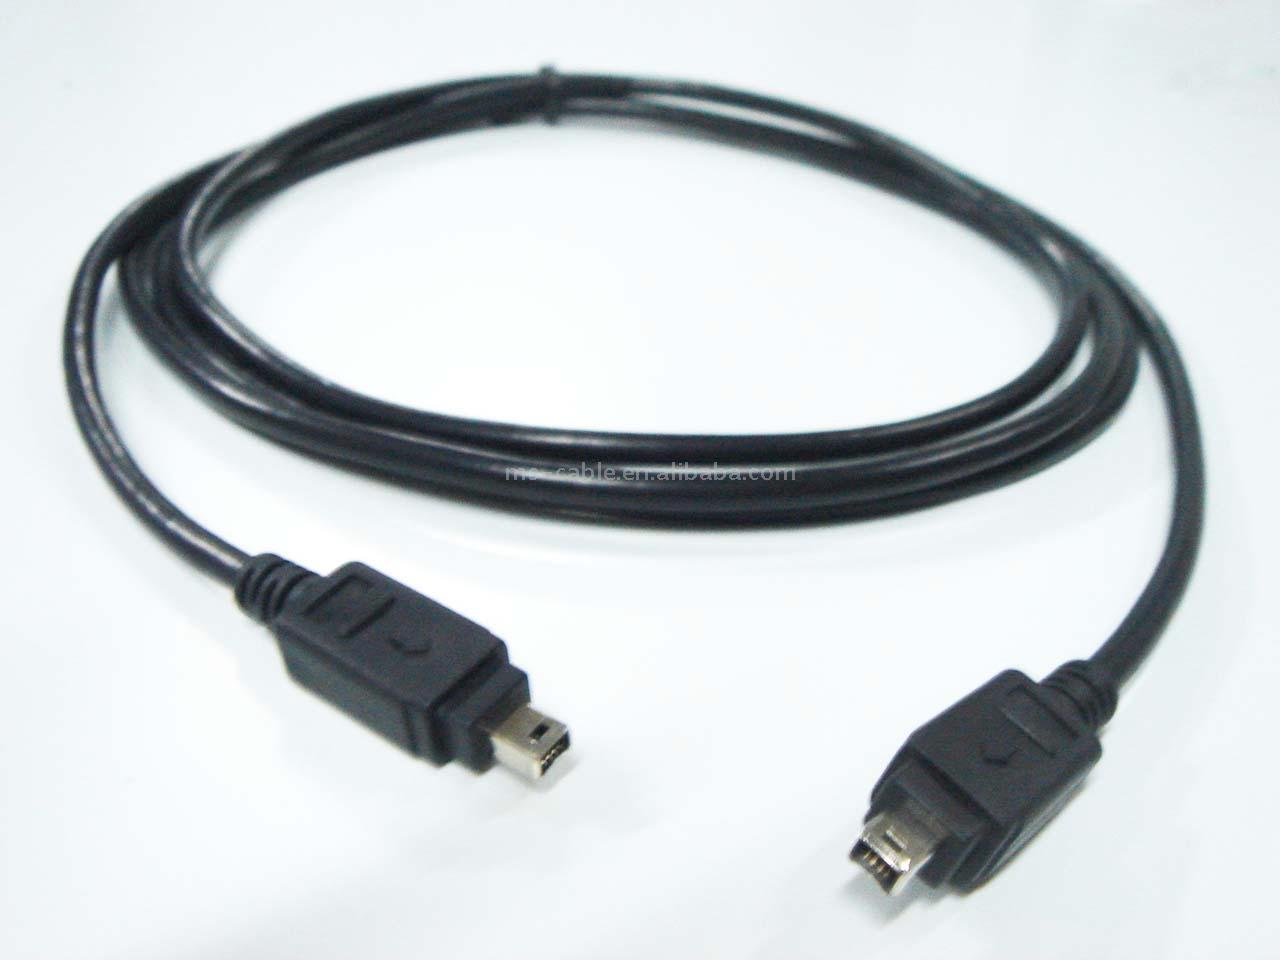  Firewire 1394 Cable (Câble Firewire 1394)